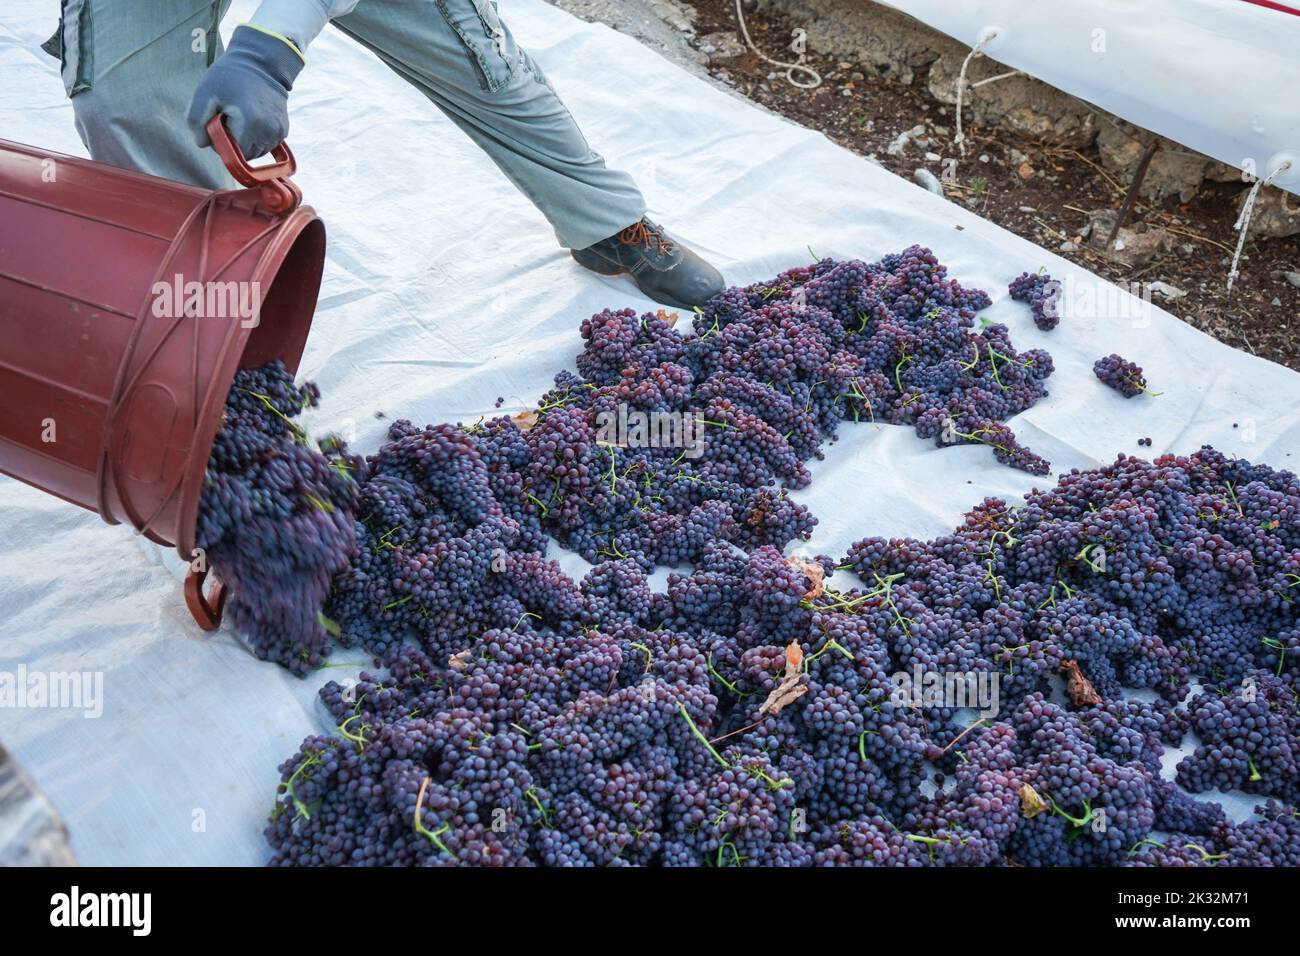 Trabajador vaciando contenedor lleno de uvas sultana recién cosechadas, la famosa pasas corintia, en los suelos de trilla. El proceso de secar en el sol. Foto de stock